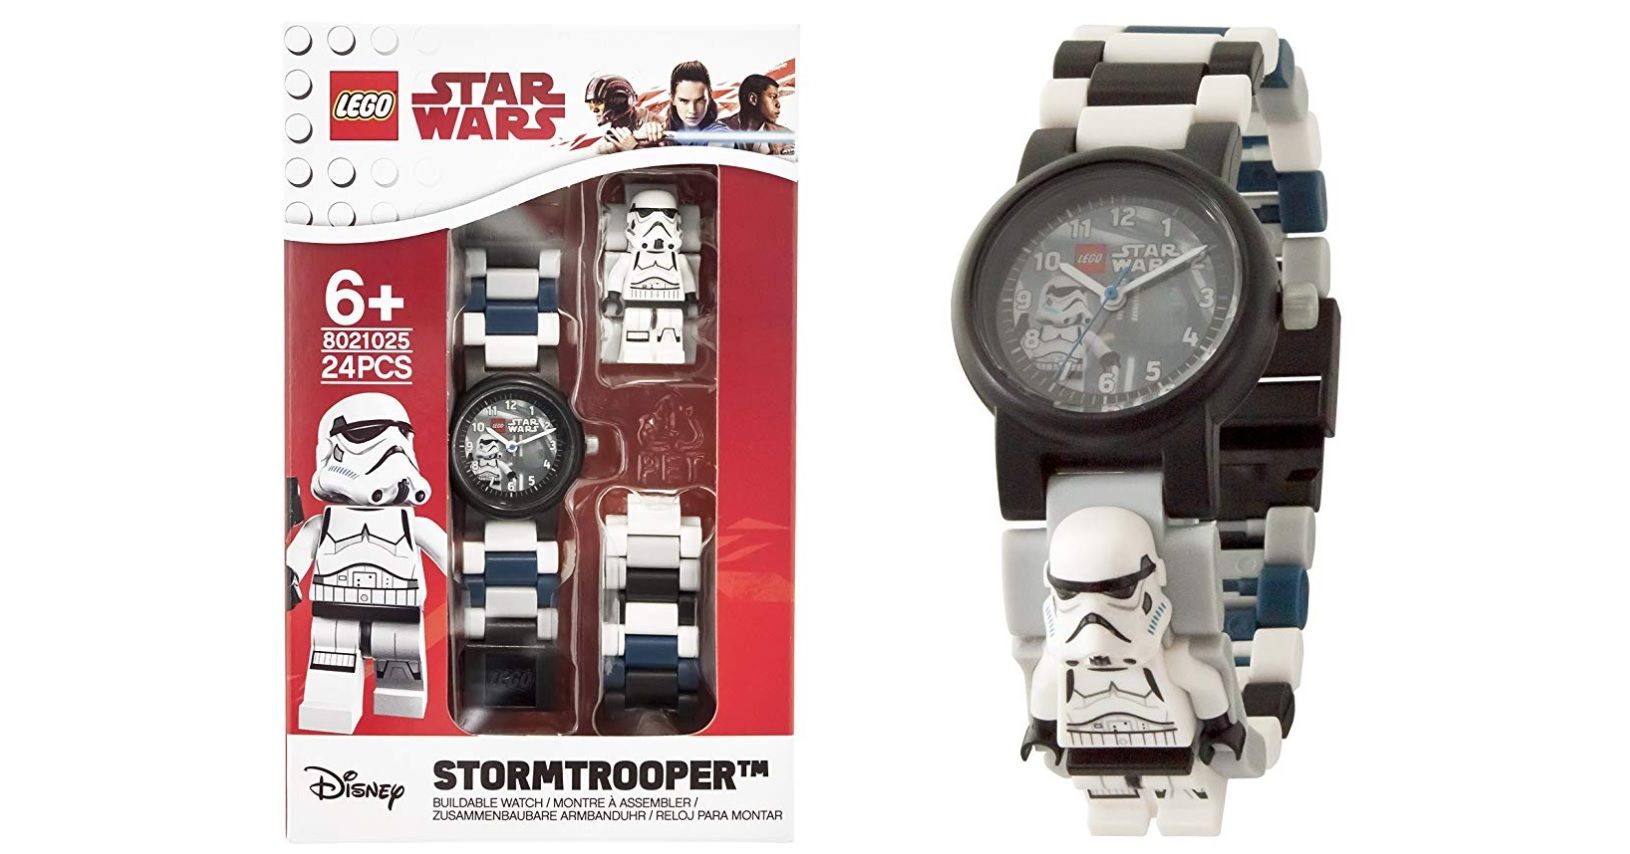 ¡Mitad de precio! Reloj modificable de LEGO Star Wars 8021025 por sólo 16€ (antes 35,50€)